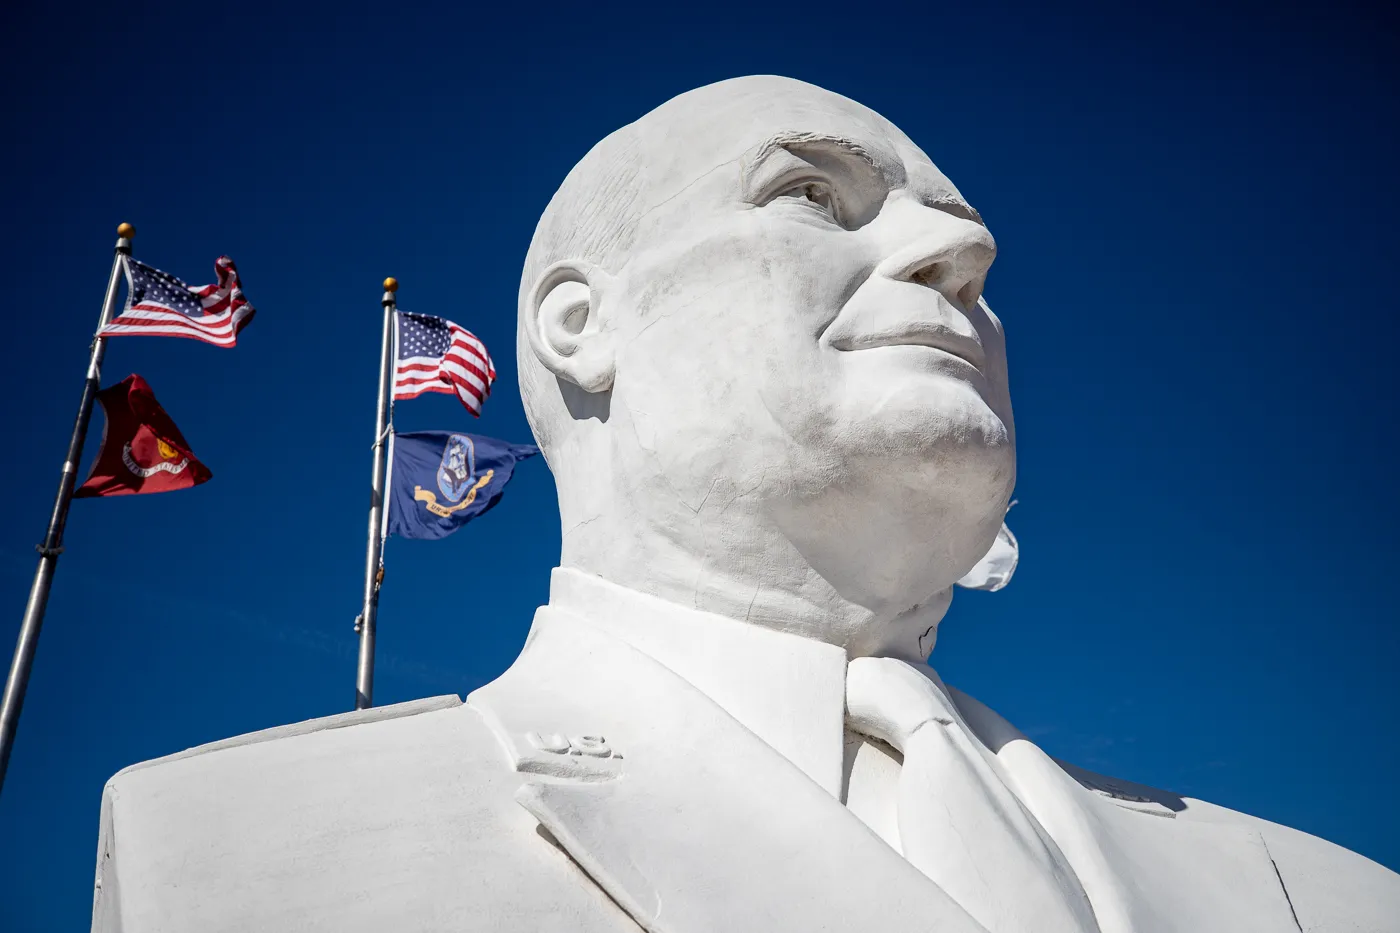 Eisenhower Veterans Monument in Denison, Texas (Giant Head)